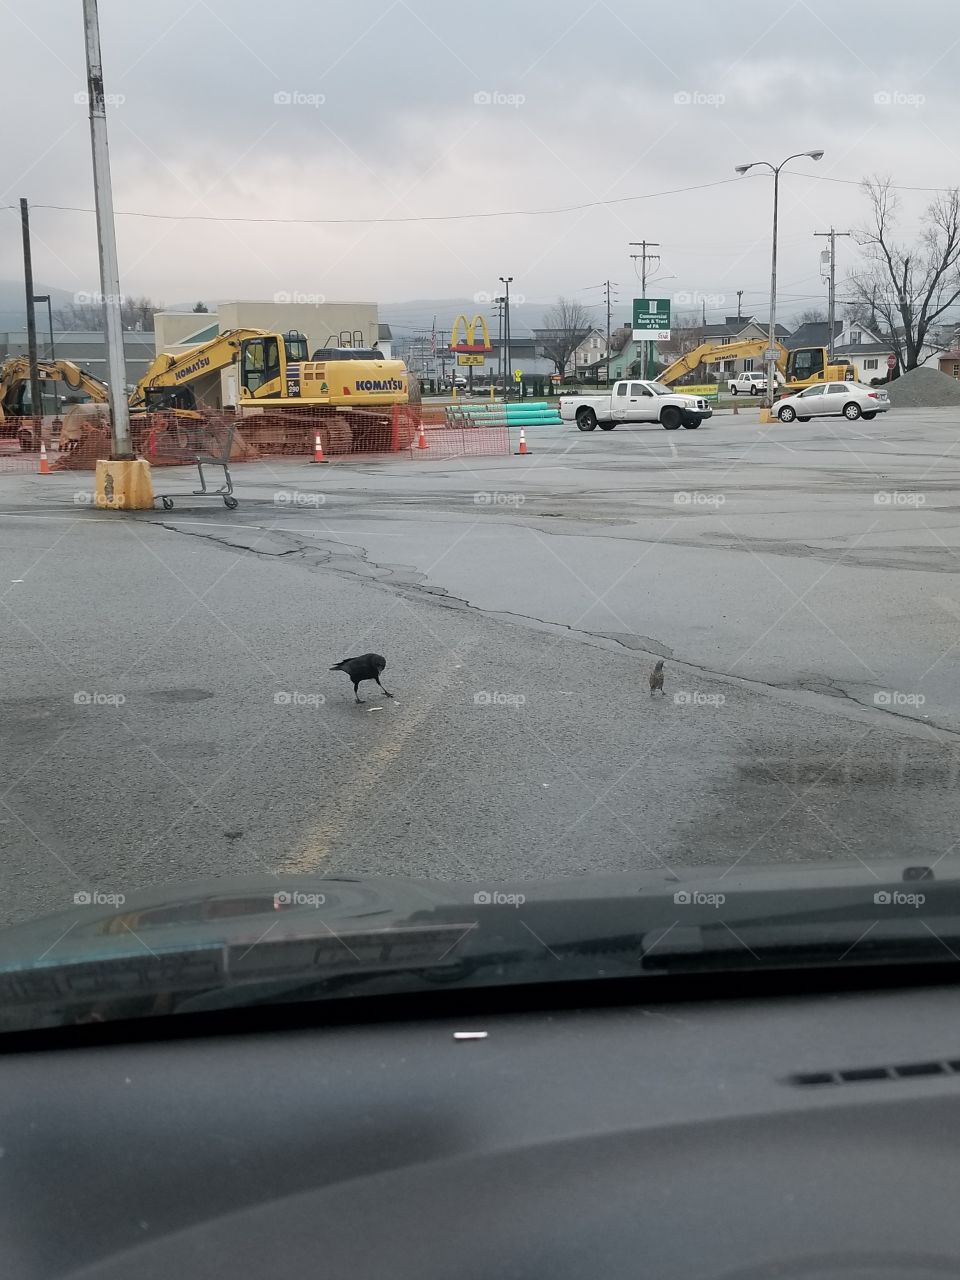 Parking lot under construction